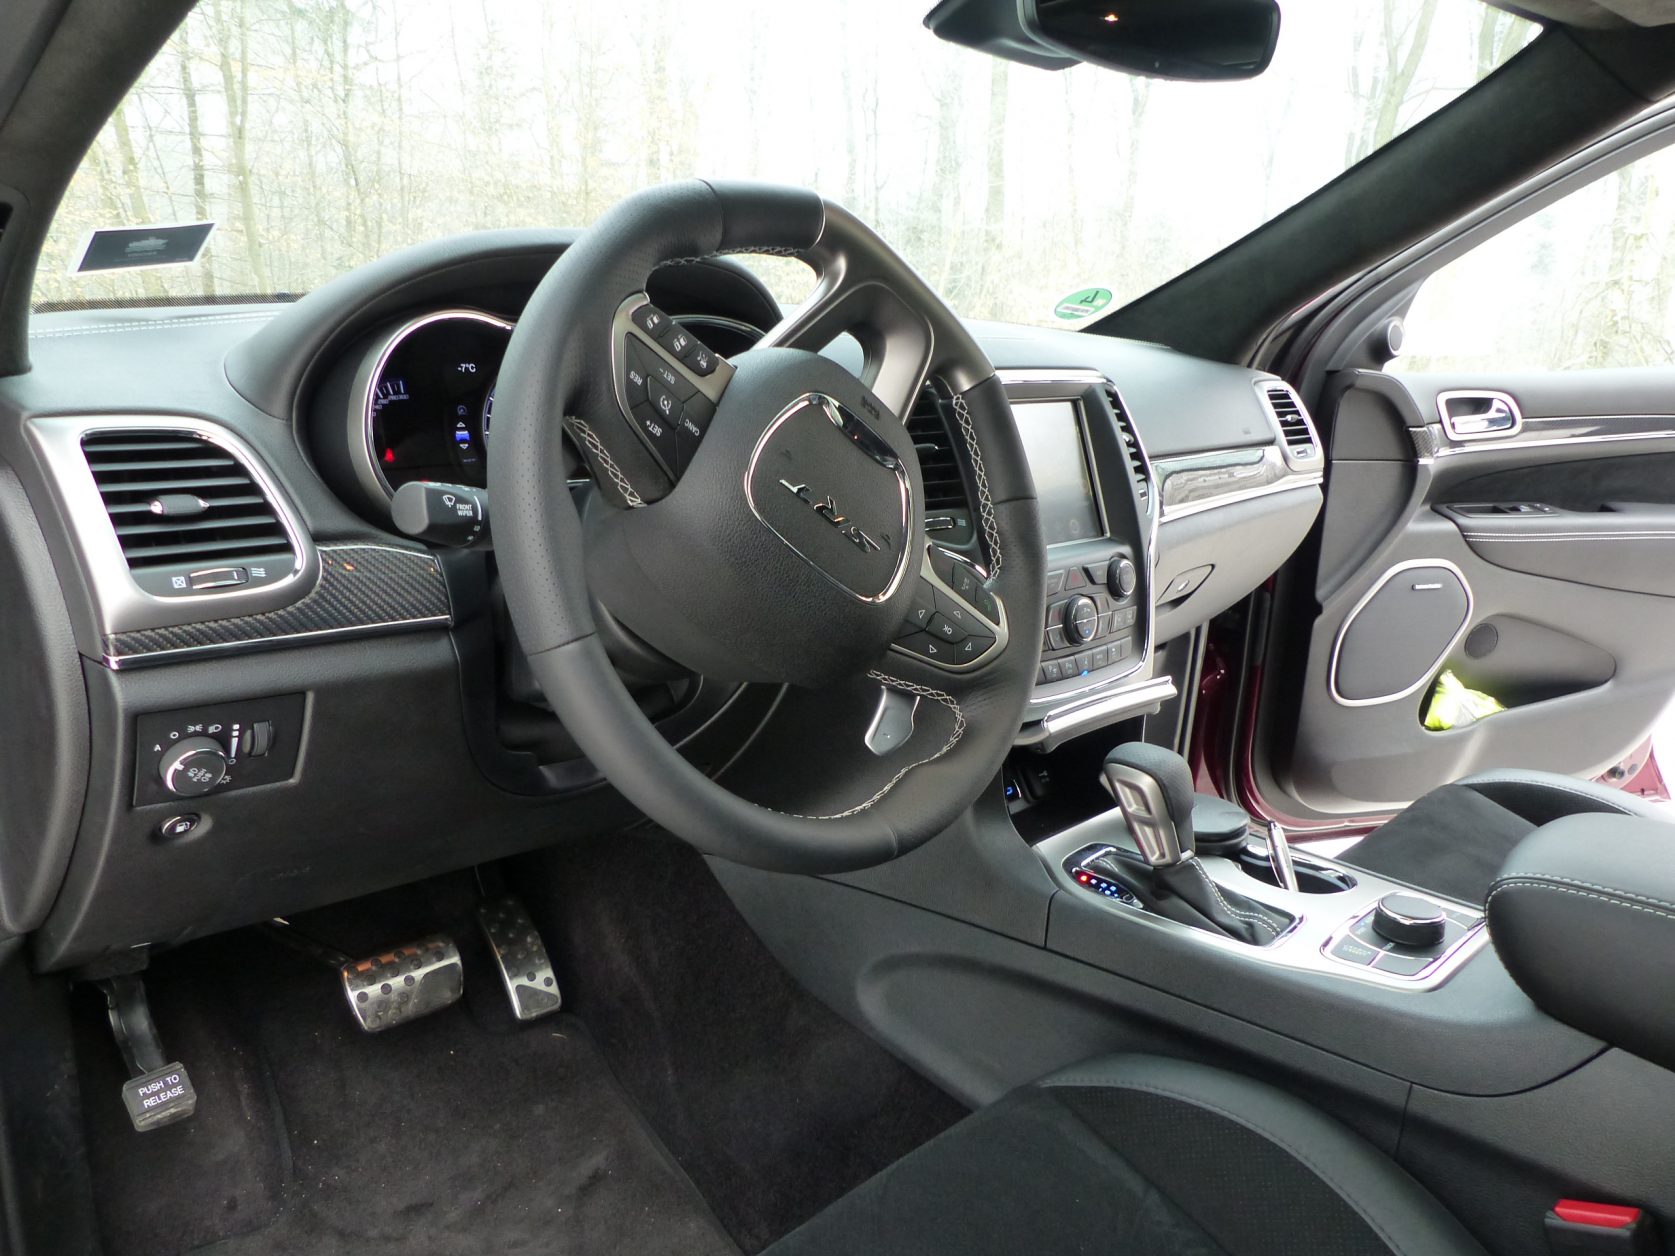 Passend zu einem Hochleistungs-SUV ist der Innenraum des Jeep Grand Cherokee SRT® betont sportlich vom Rennsport inspiriert. Foto: D.Weirauch